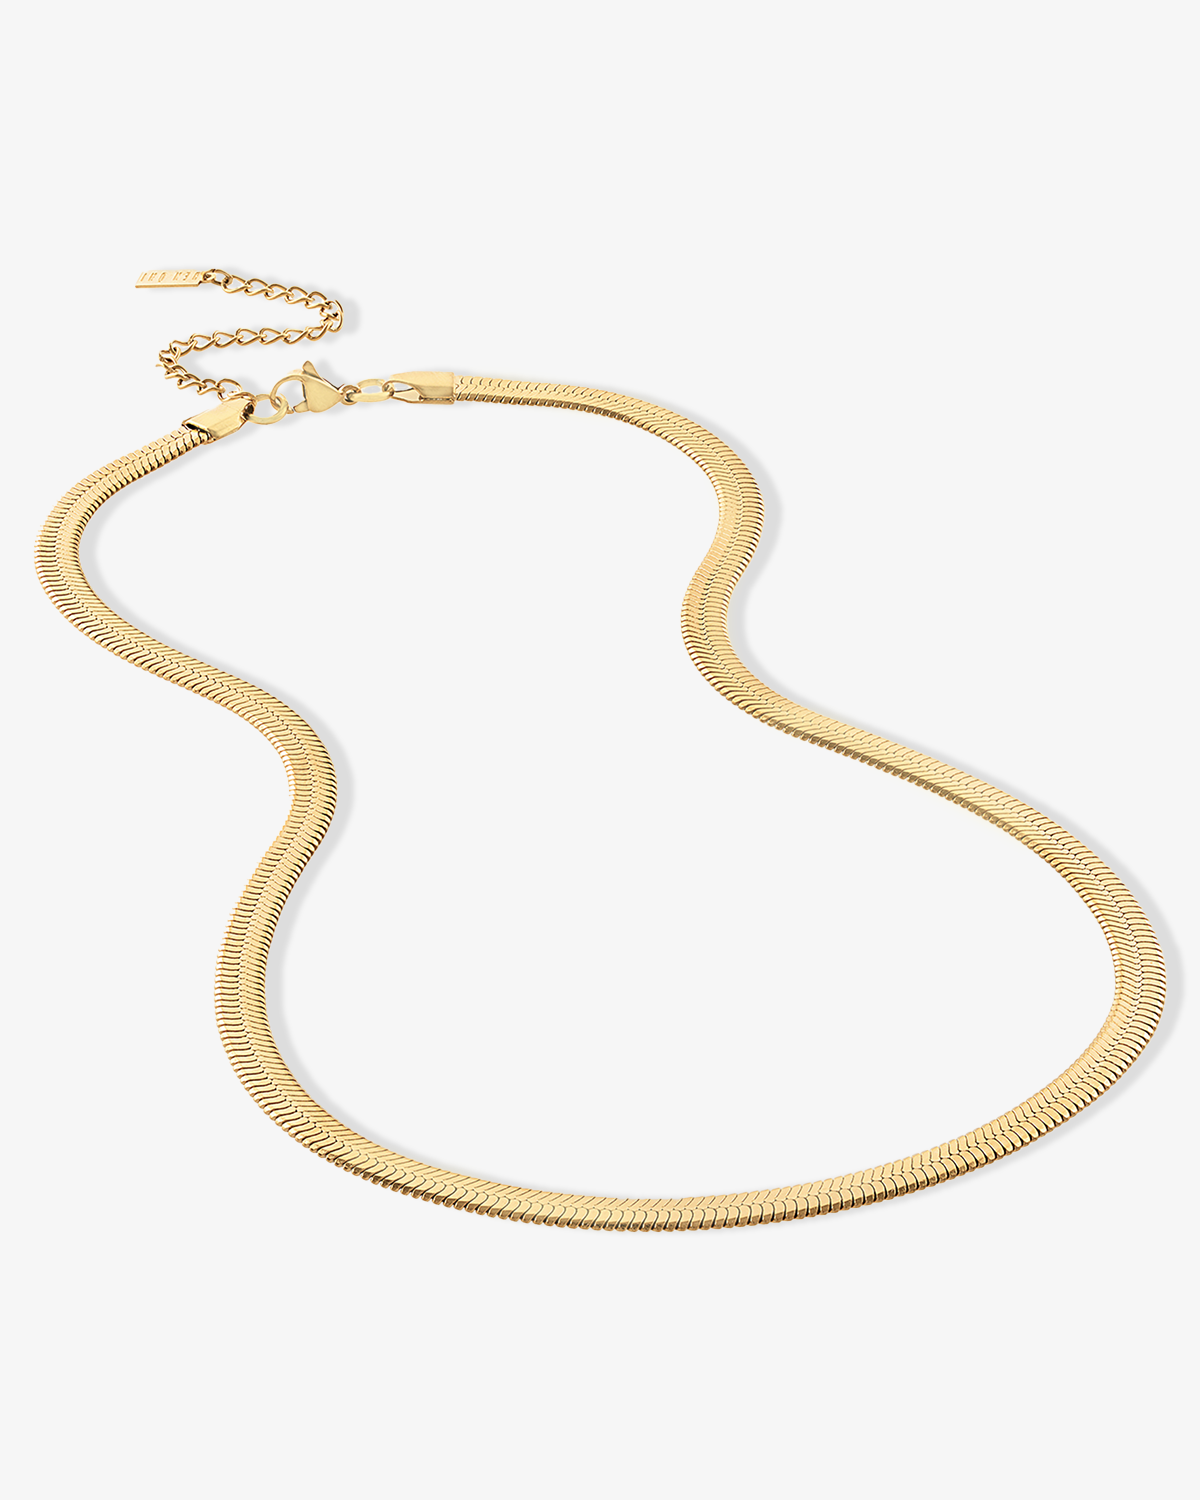 Maelle Bold Herringbone Chain Necklace